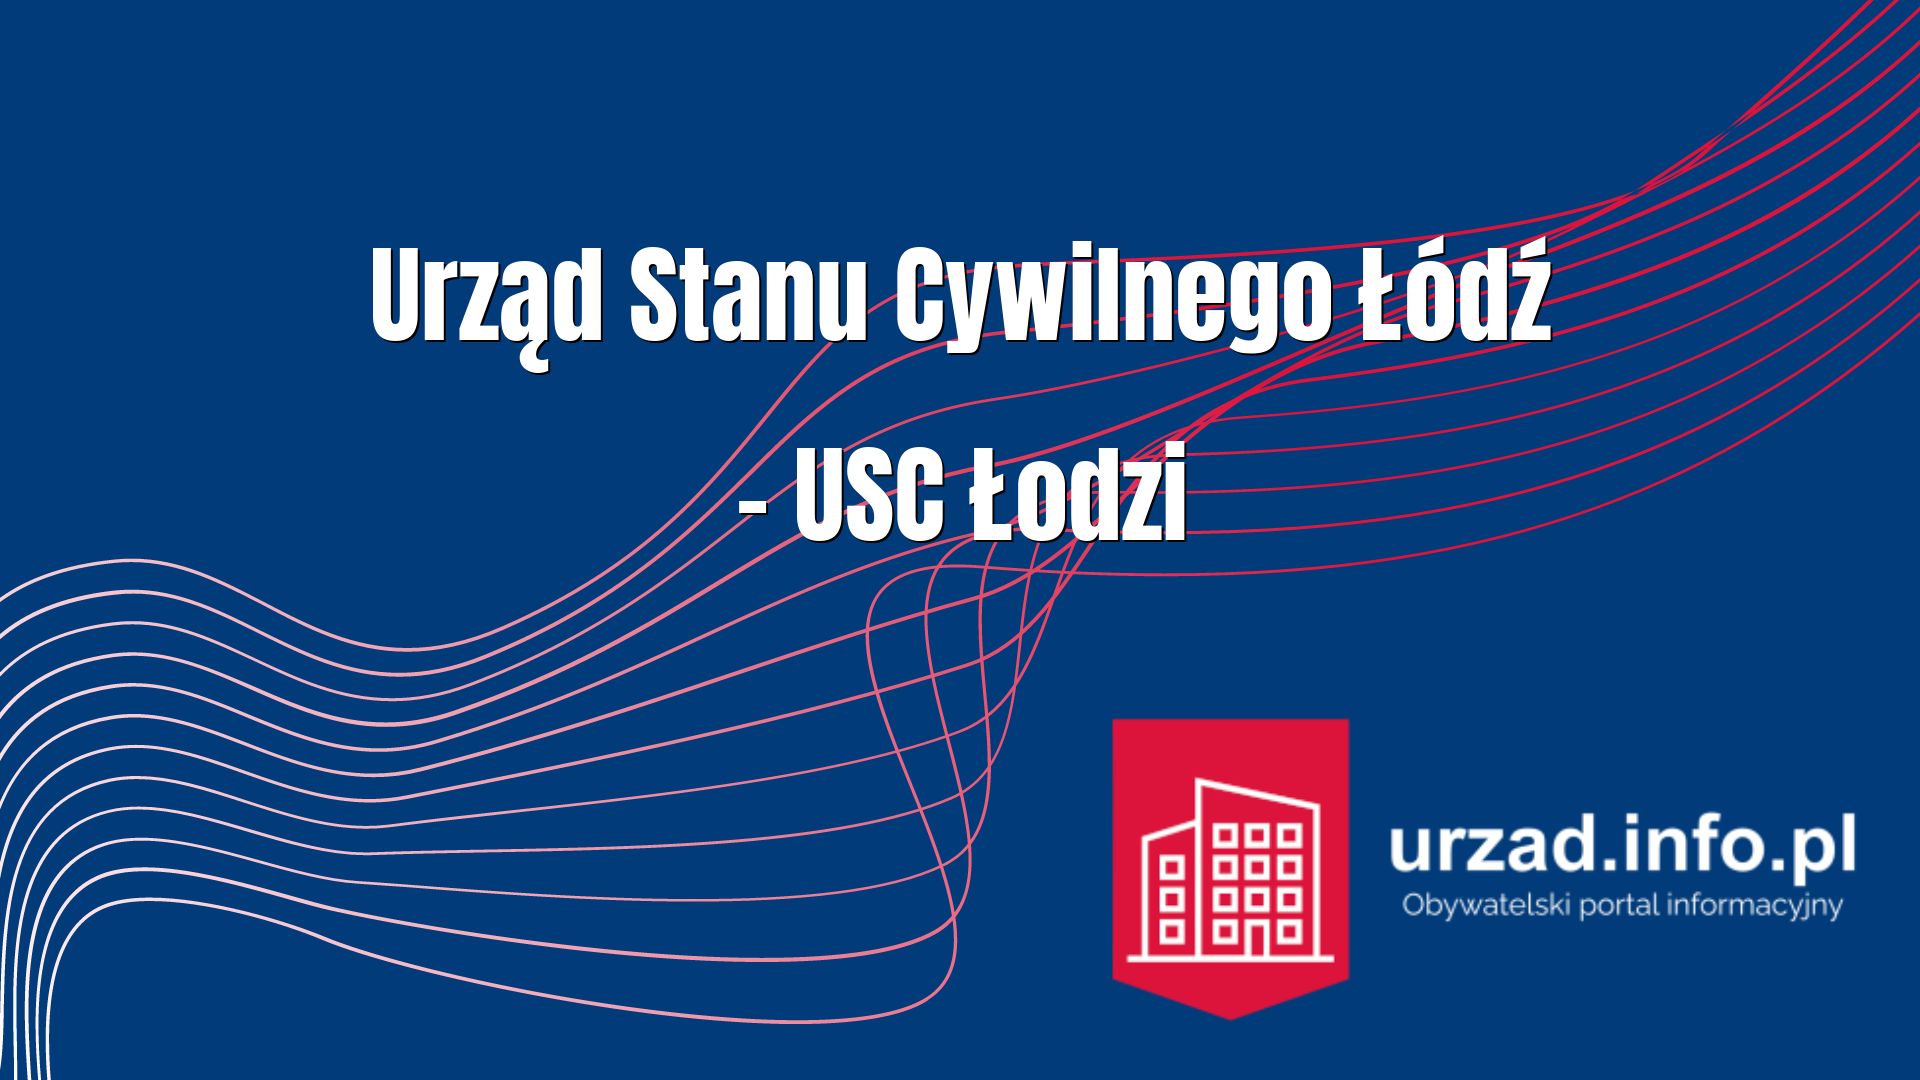 Urząd Stanu Cywilnego Łódź – USC Łodzi